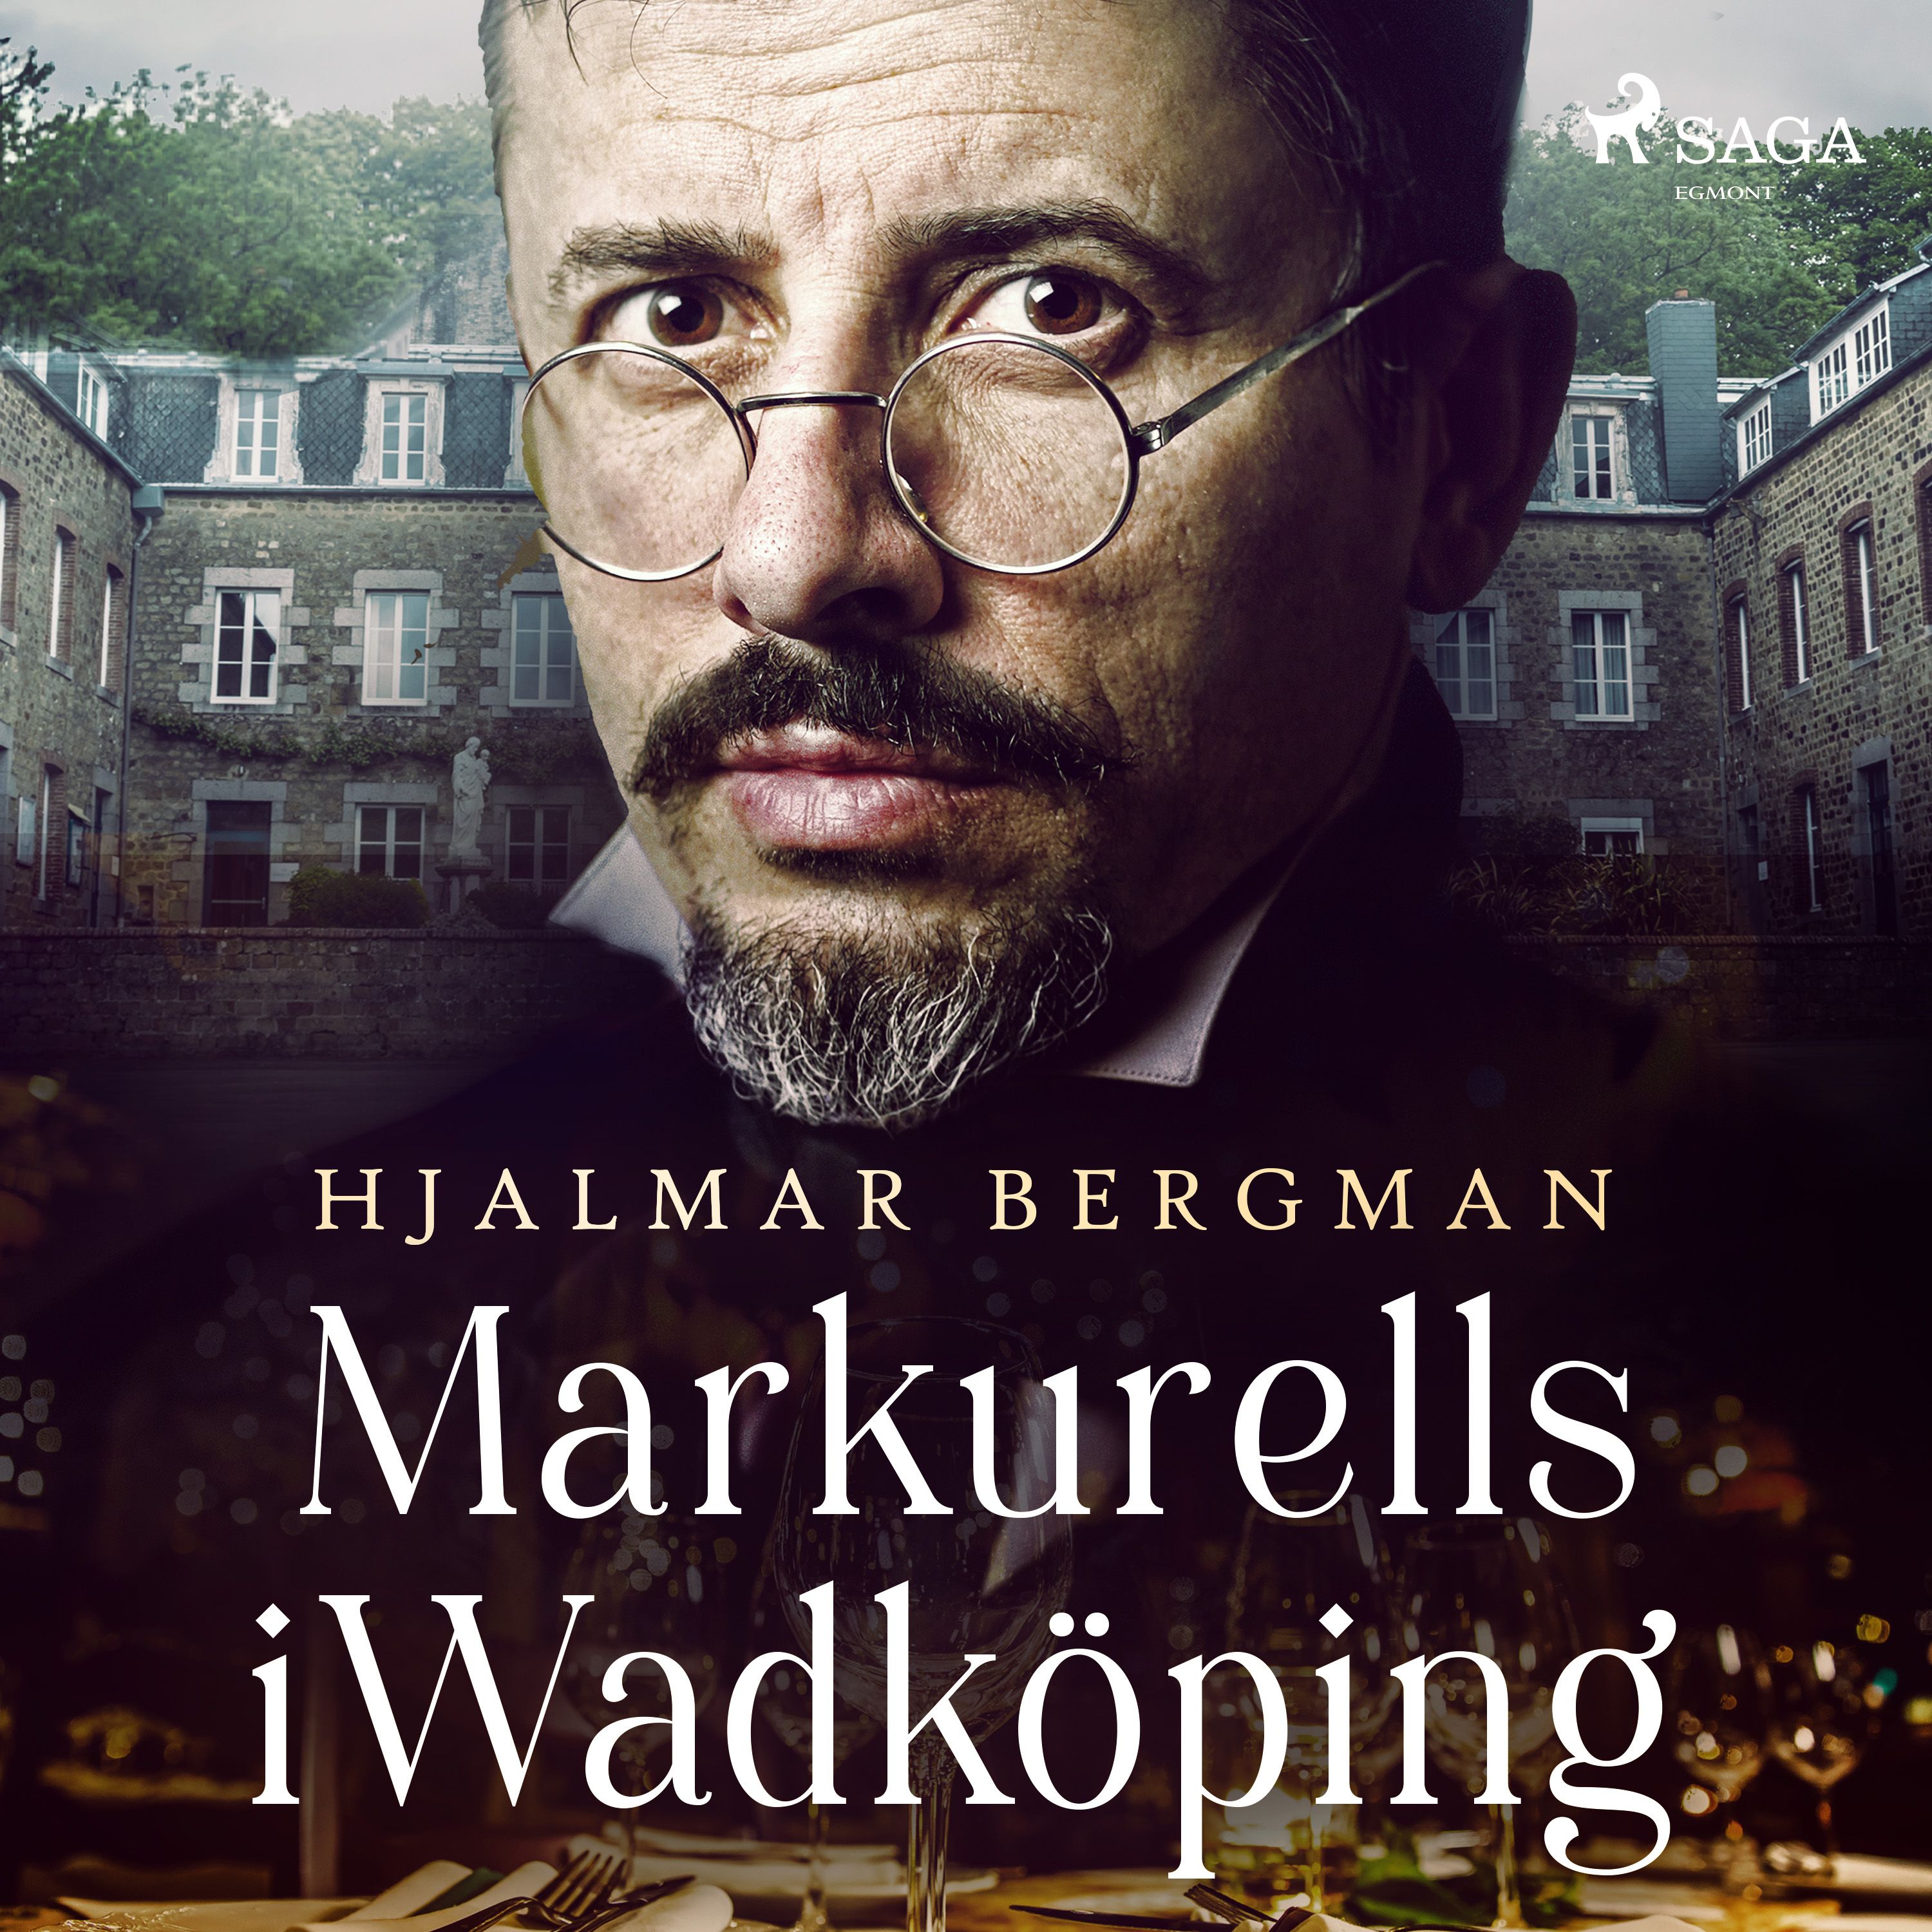 Markurells i Wadköping, audiobook by Hjalmar  Bergman